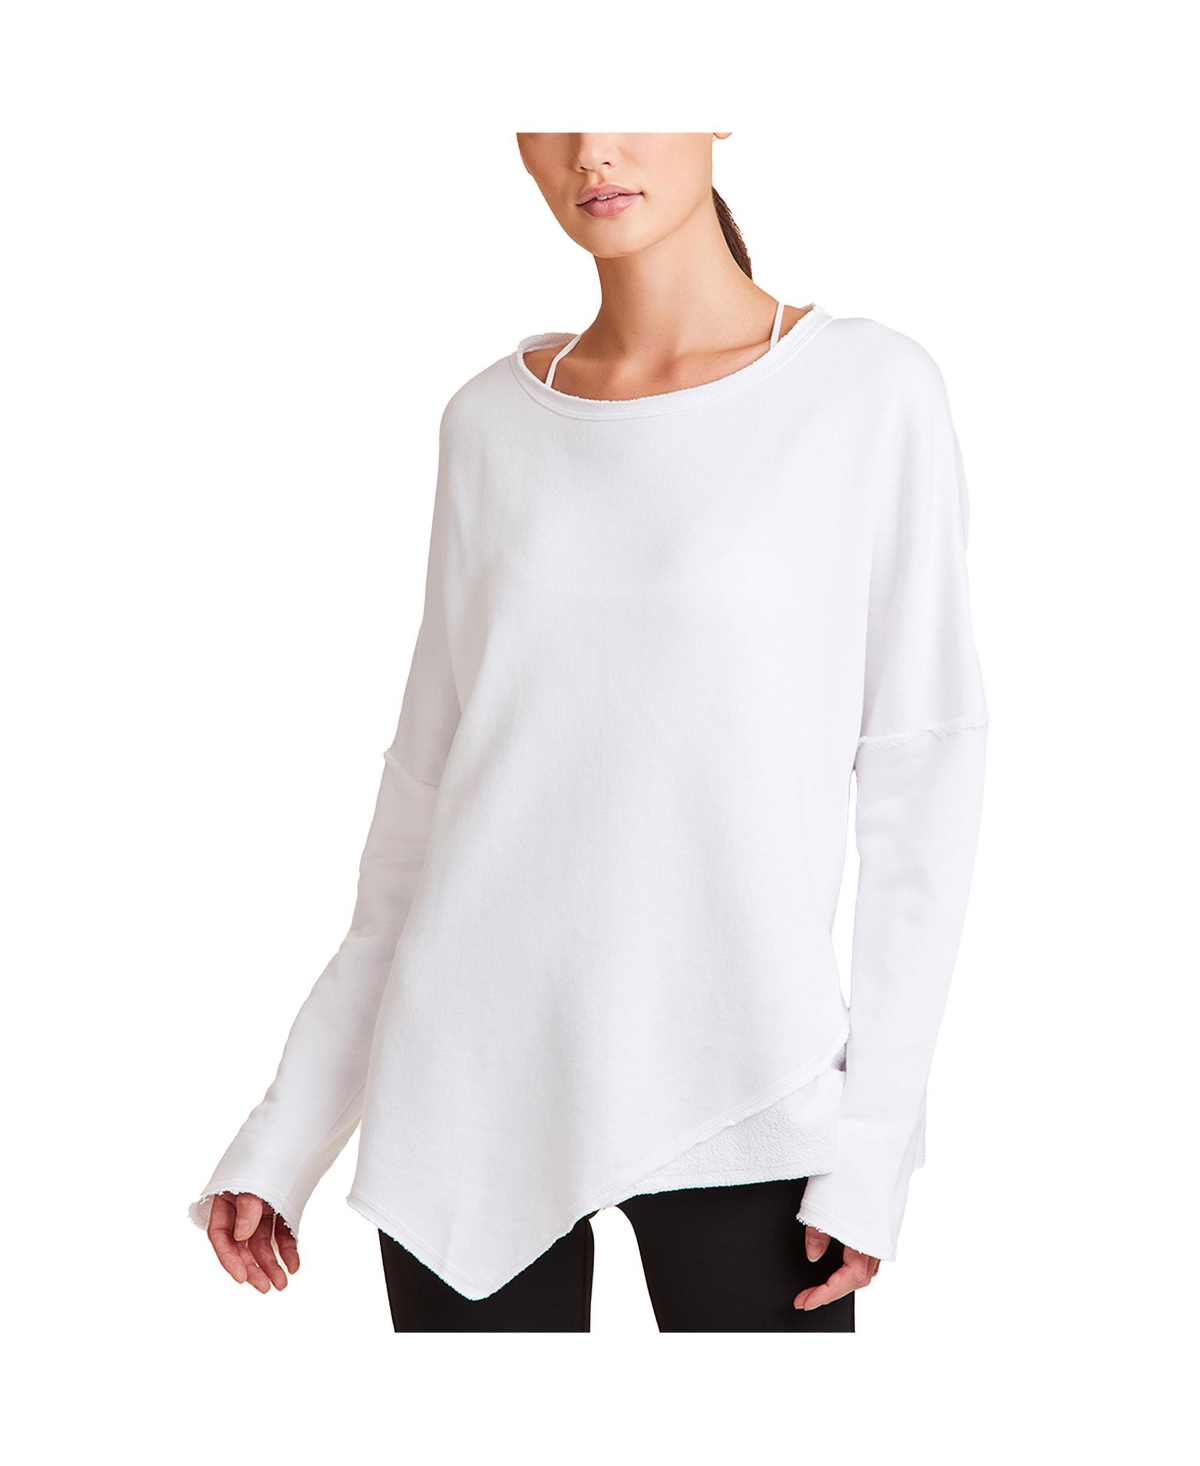 Adult Women Exhale Sweatshirt - Grey